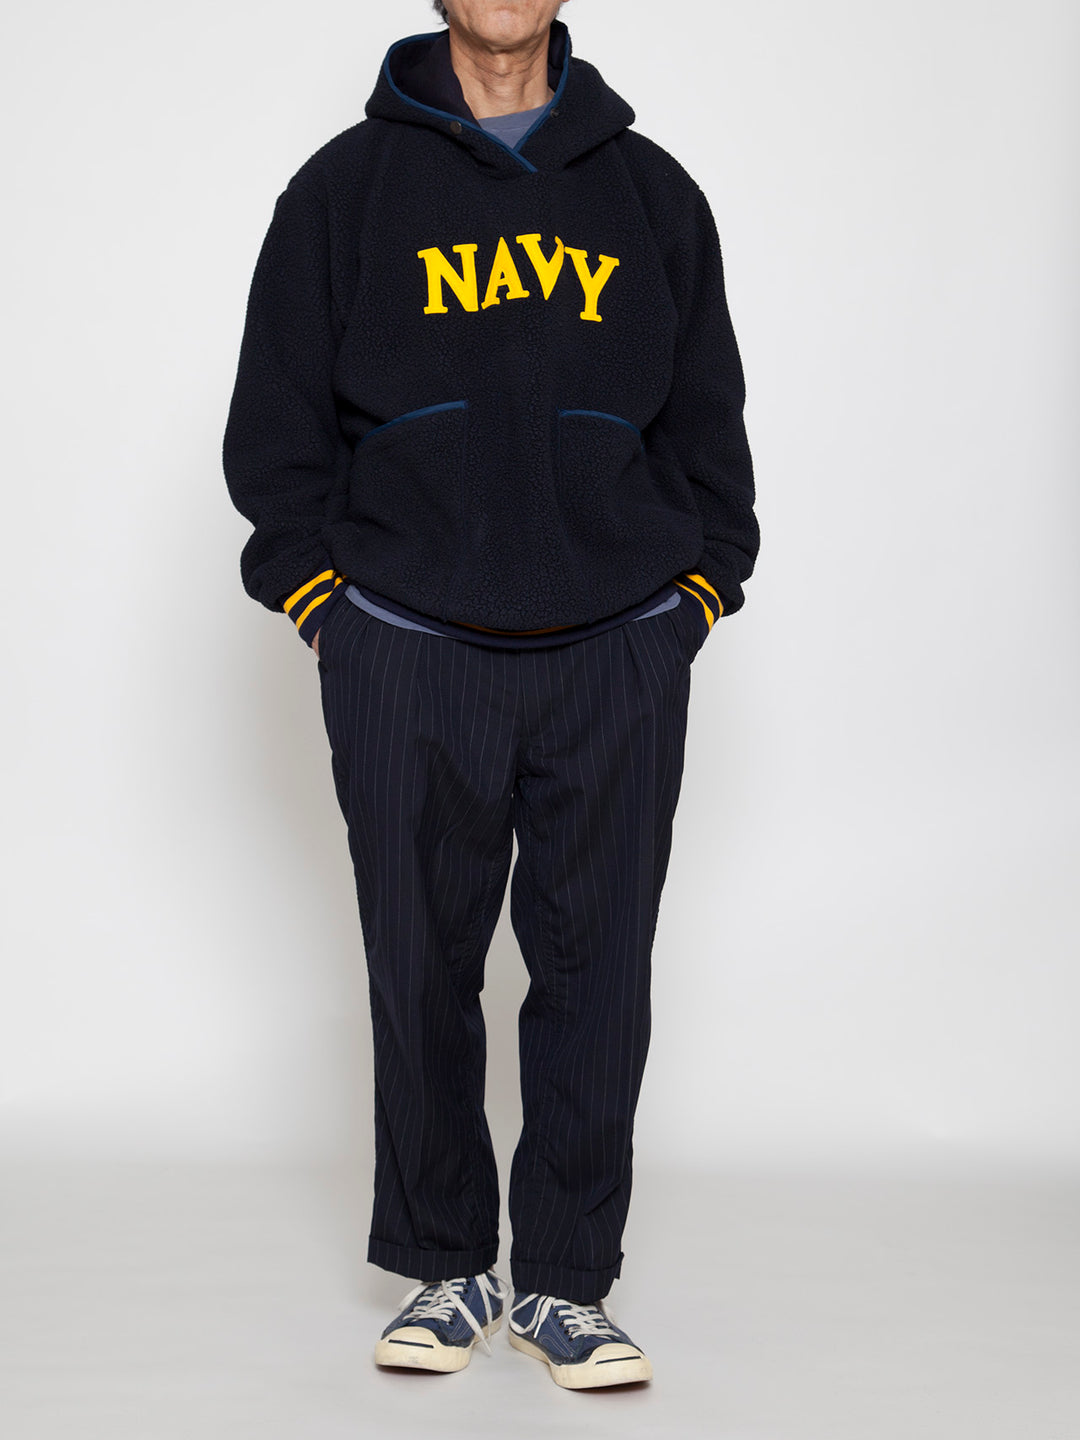 THE CORONA UTILITY - CJ013・NAVY Athletic Parka / POLARTEC Heavy Boa Fleece w/"NAVY" Felt - Navy